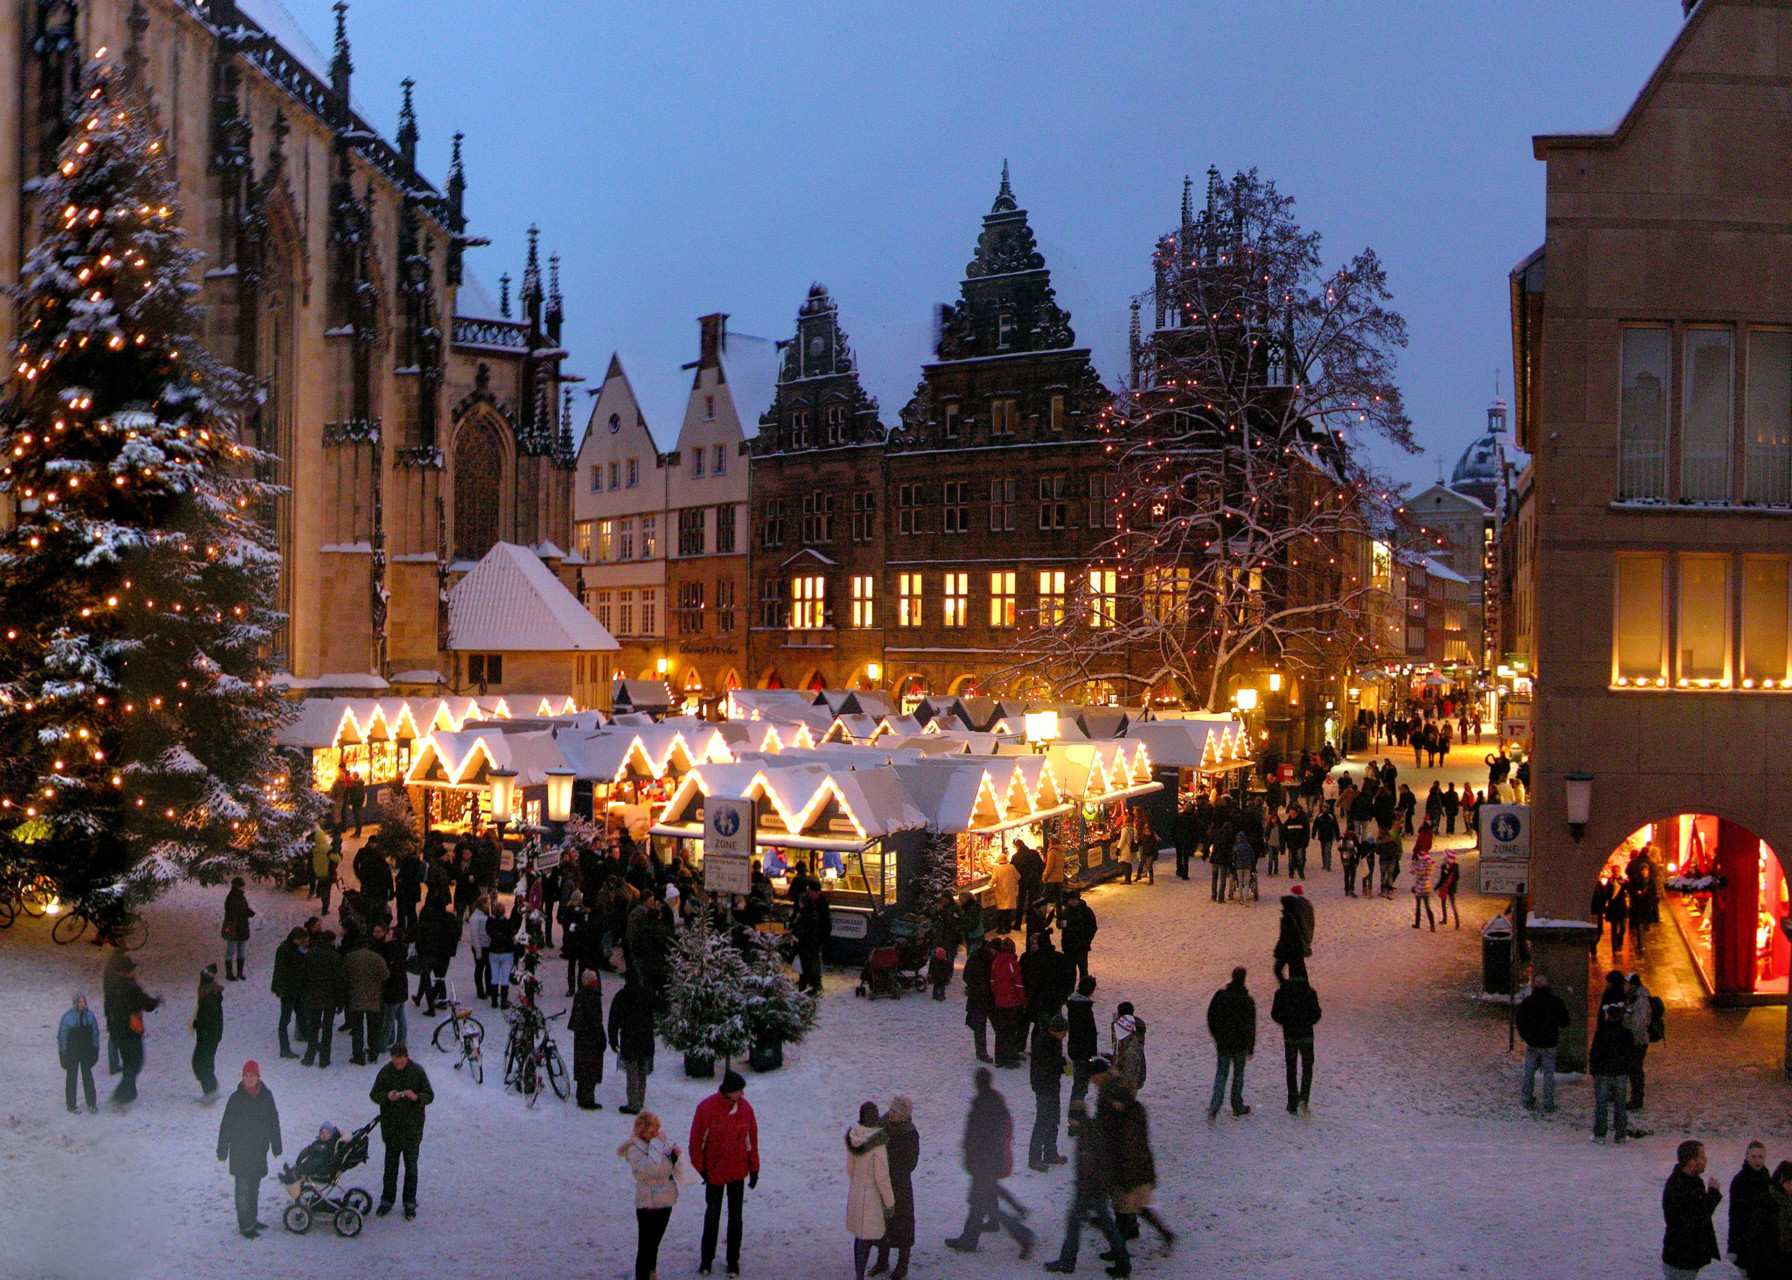 Weihnachtsmarkt in Münster an der Lambertikirche